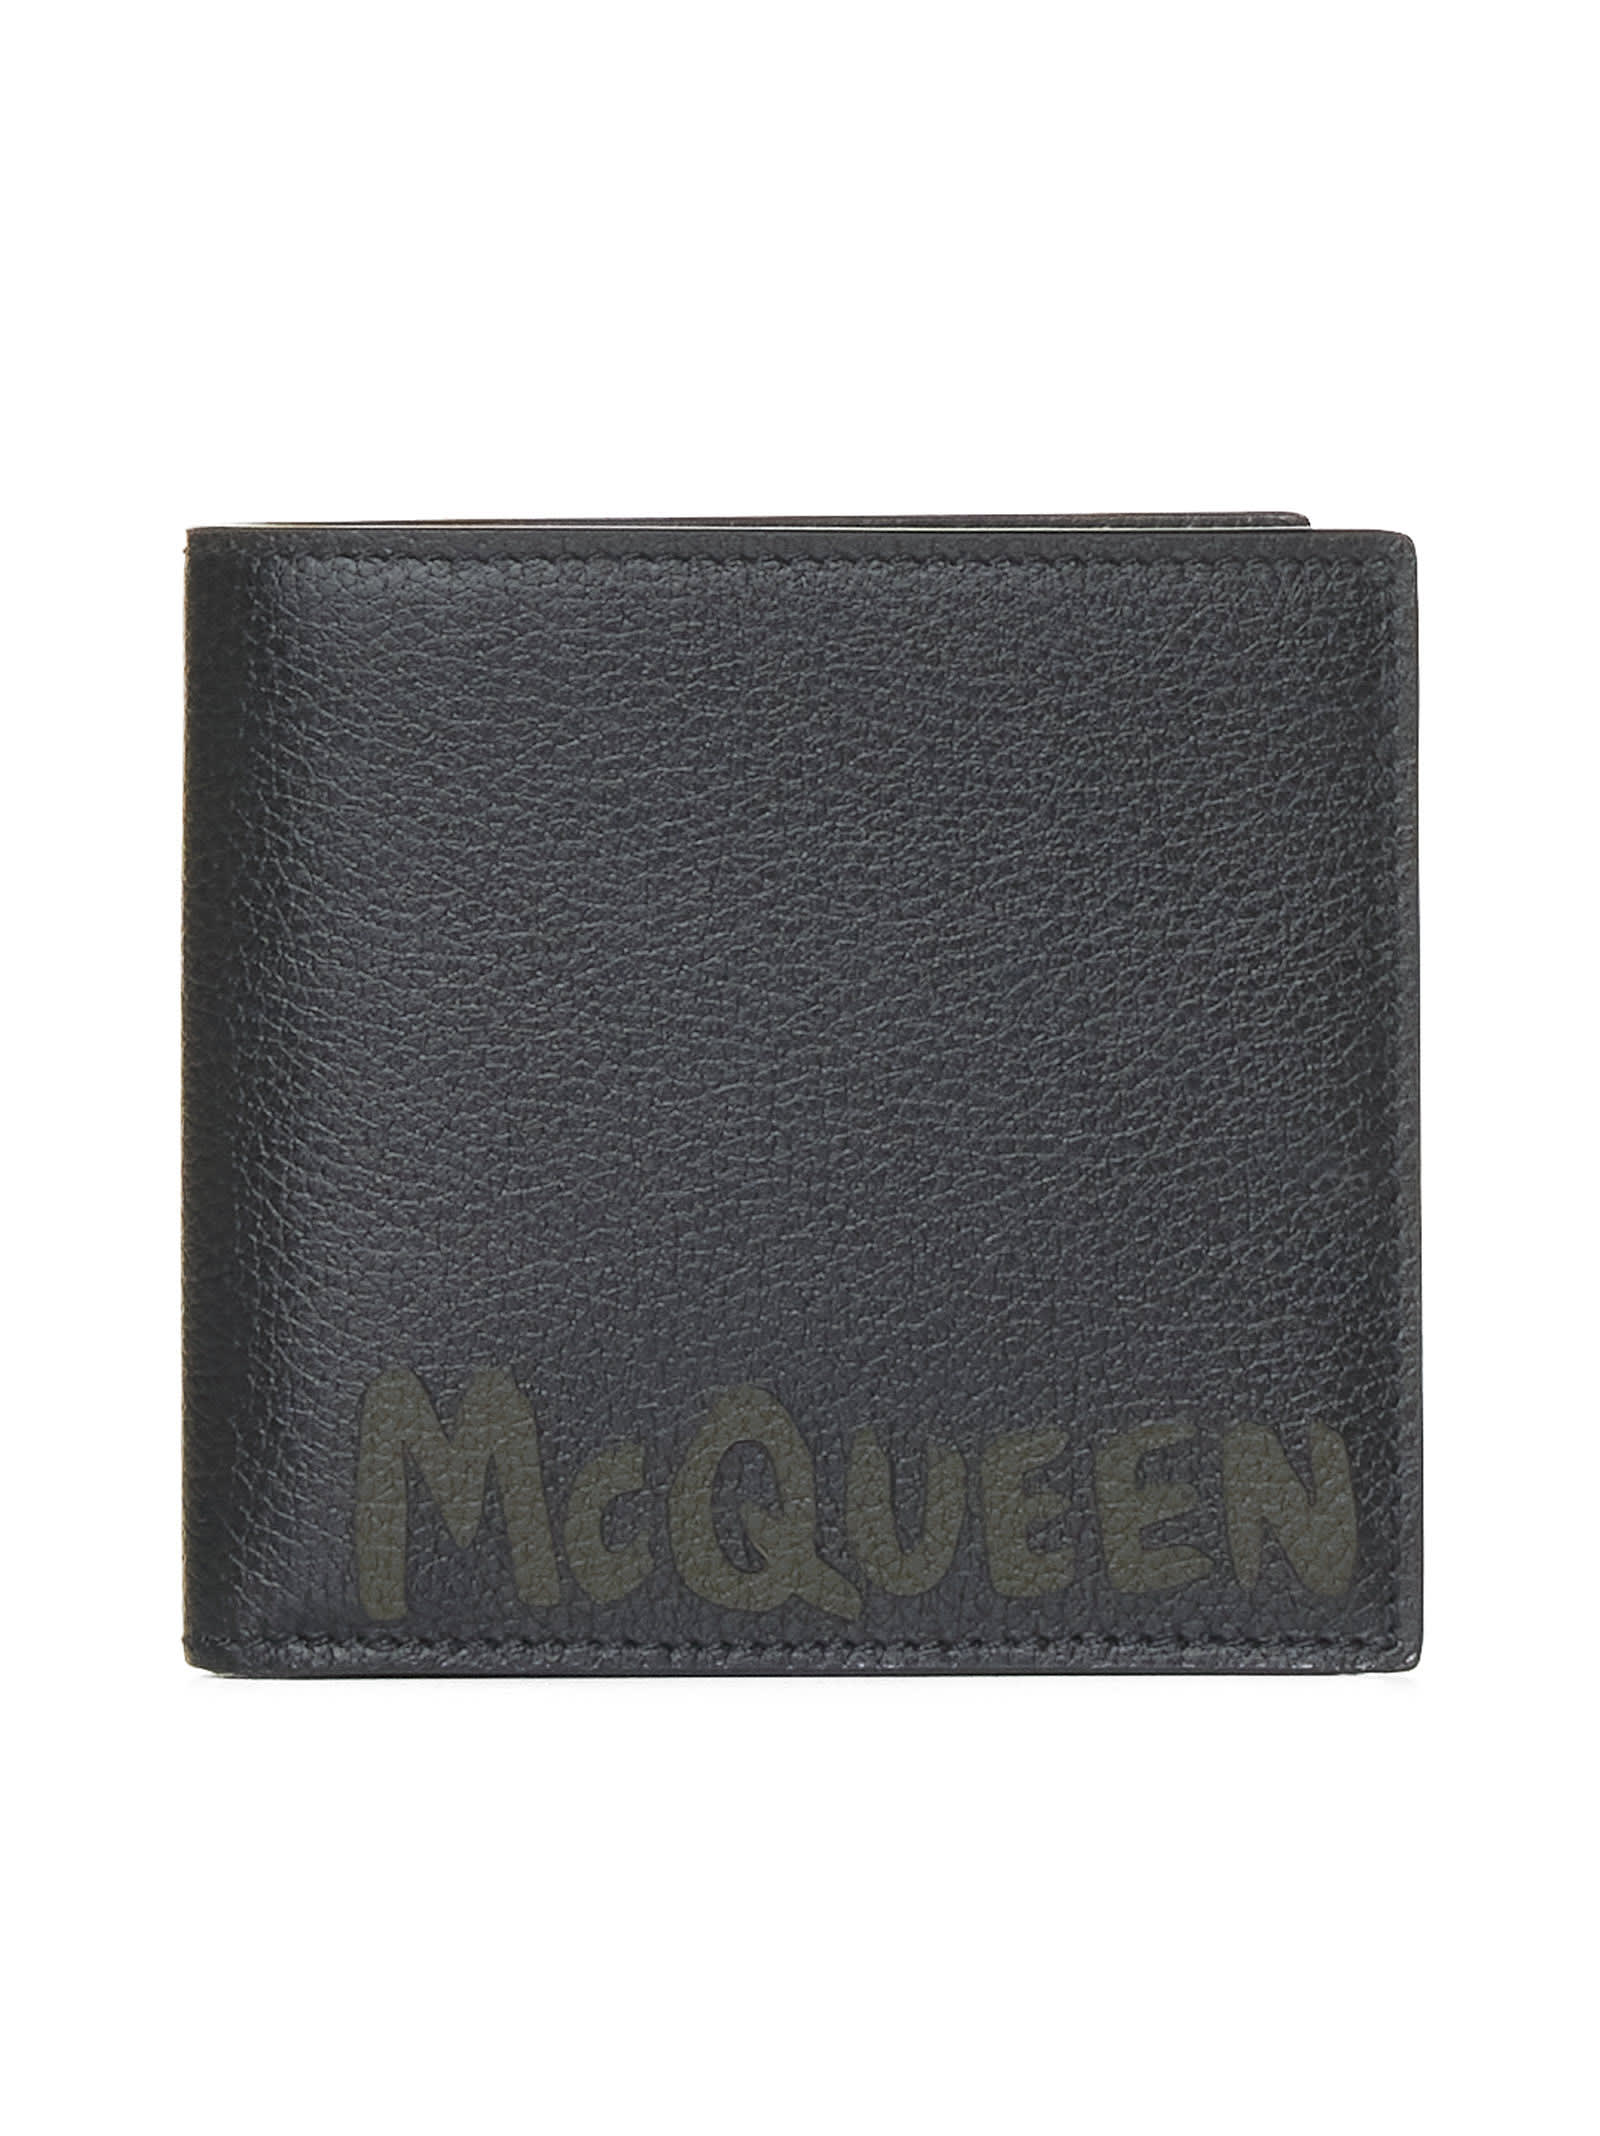 Alexander McQueen Calfskin Wallet